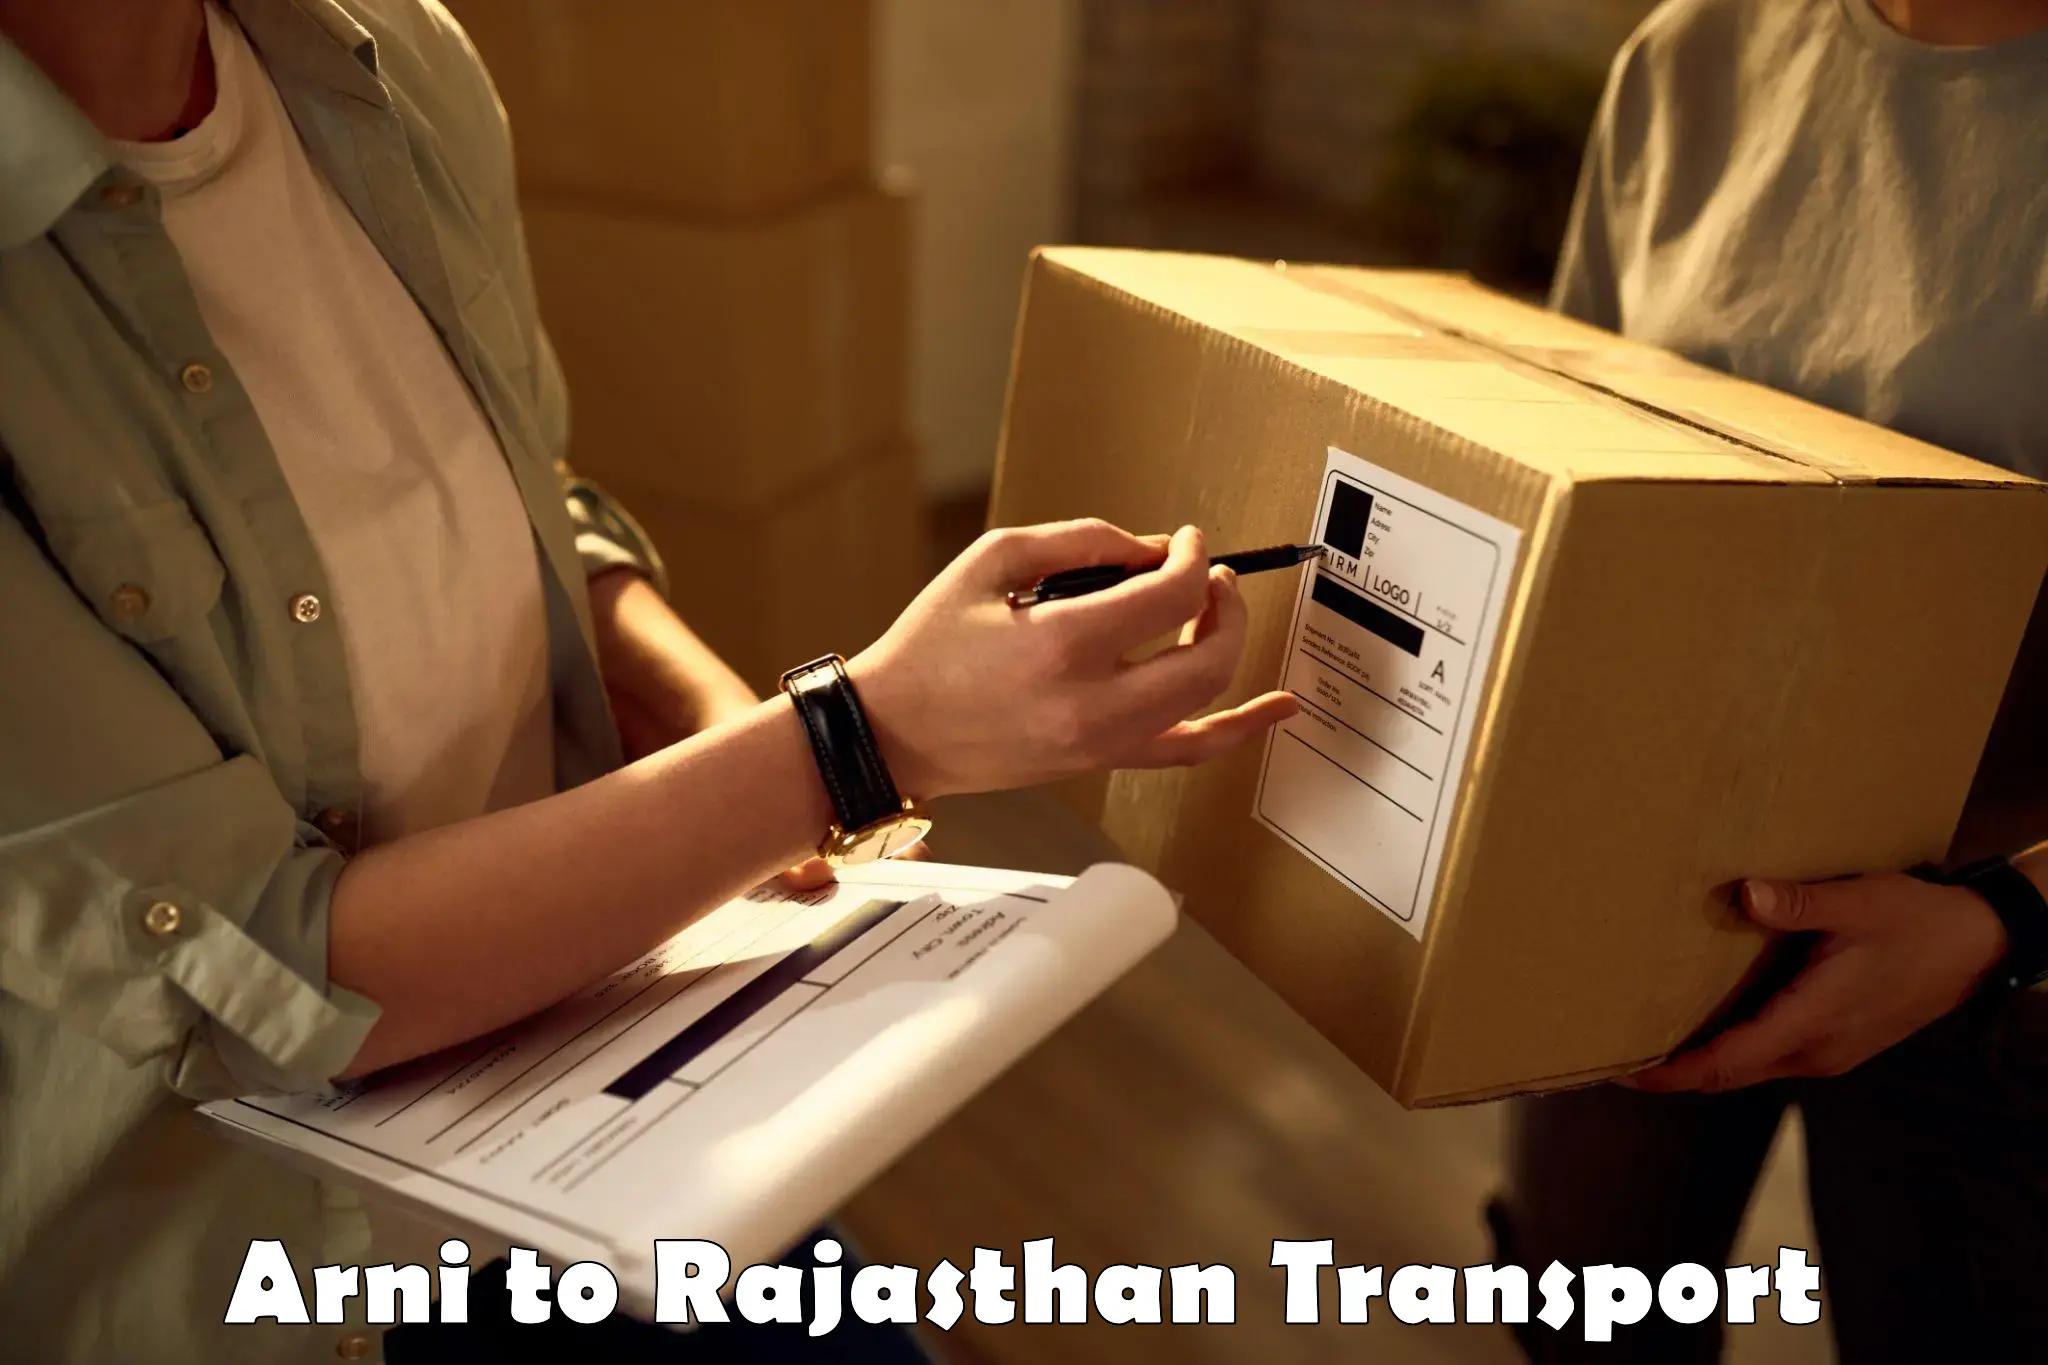 Furniture transport service Arni to Nagar